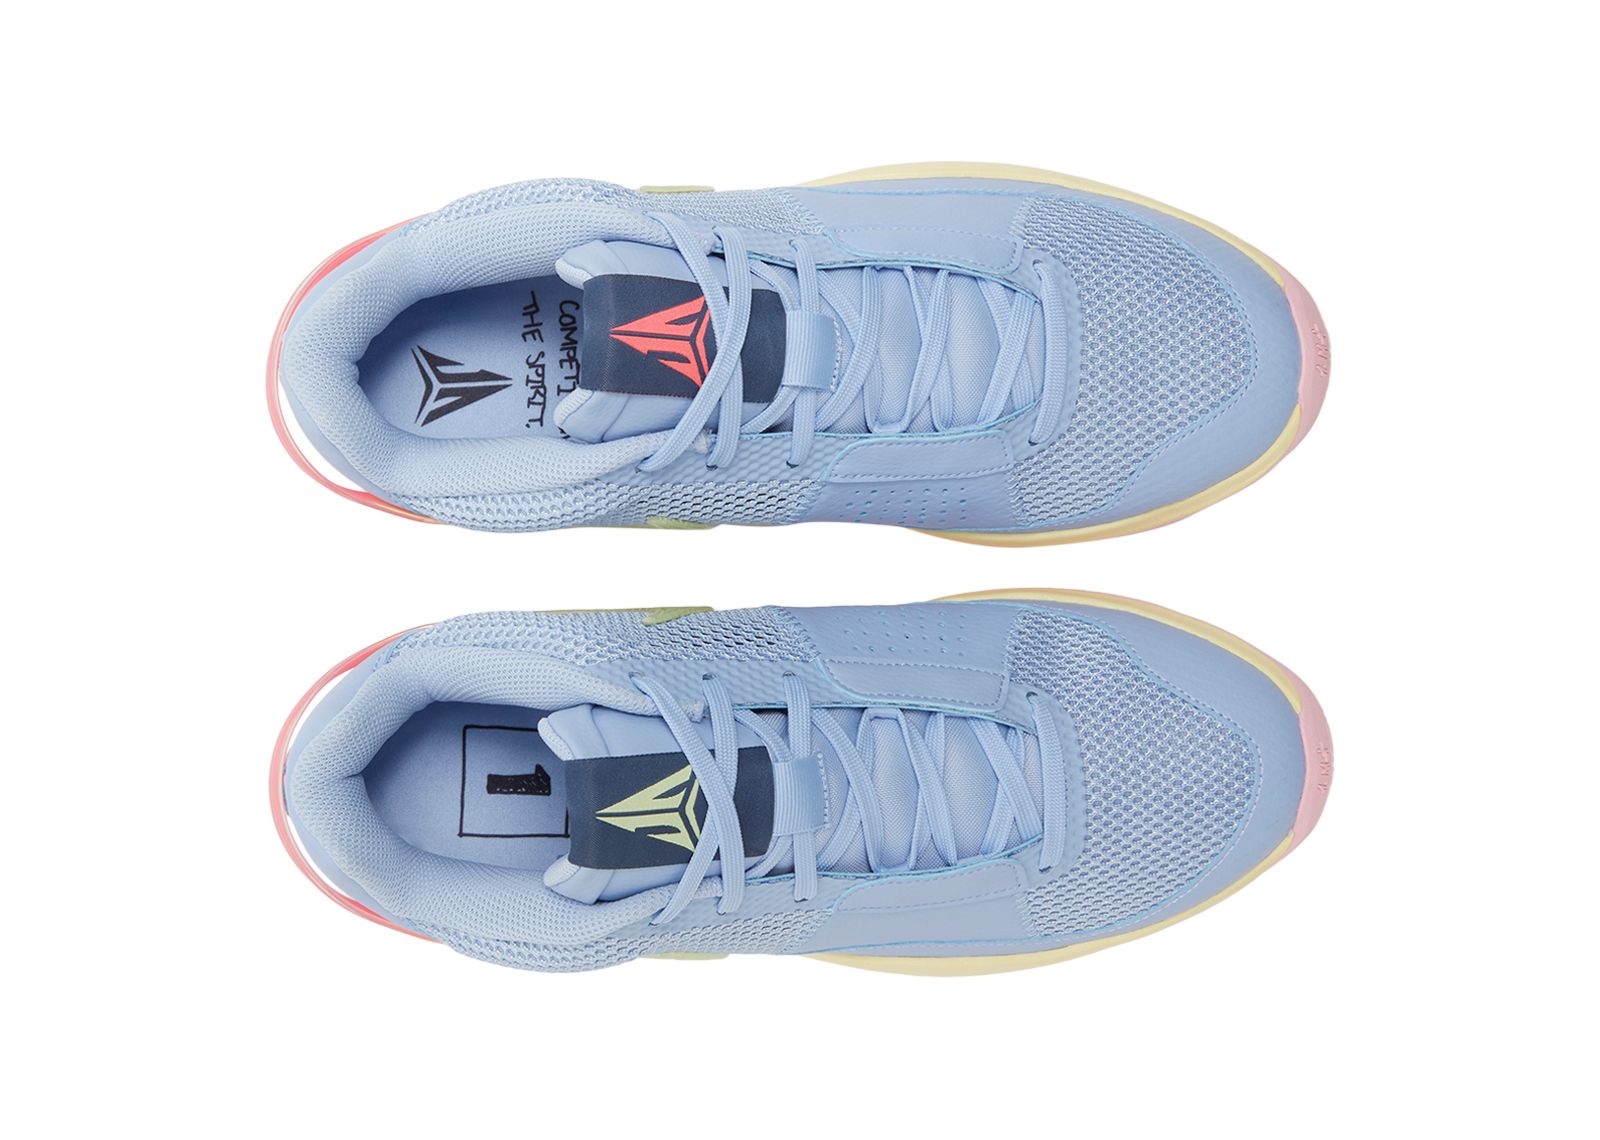 Nike Ja 1 “EYBL” : r/memphisgrizzlies